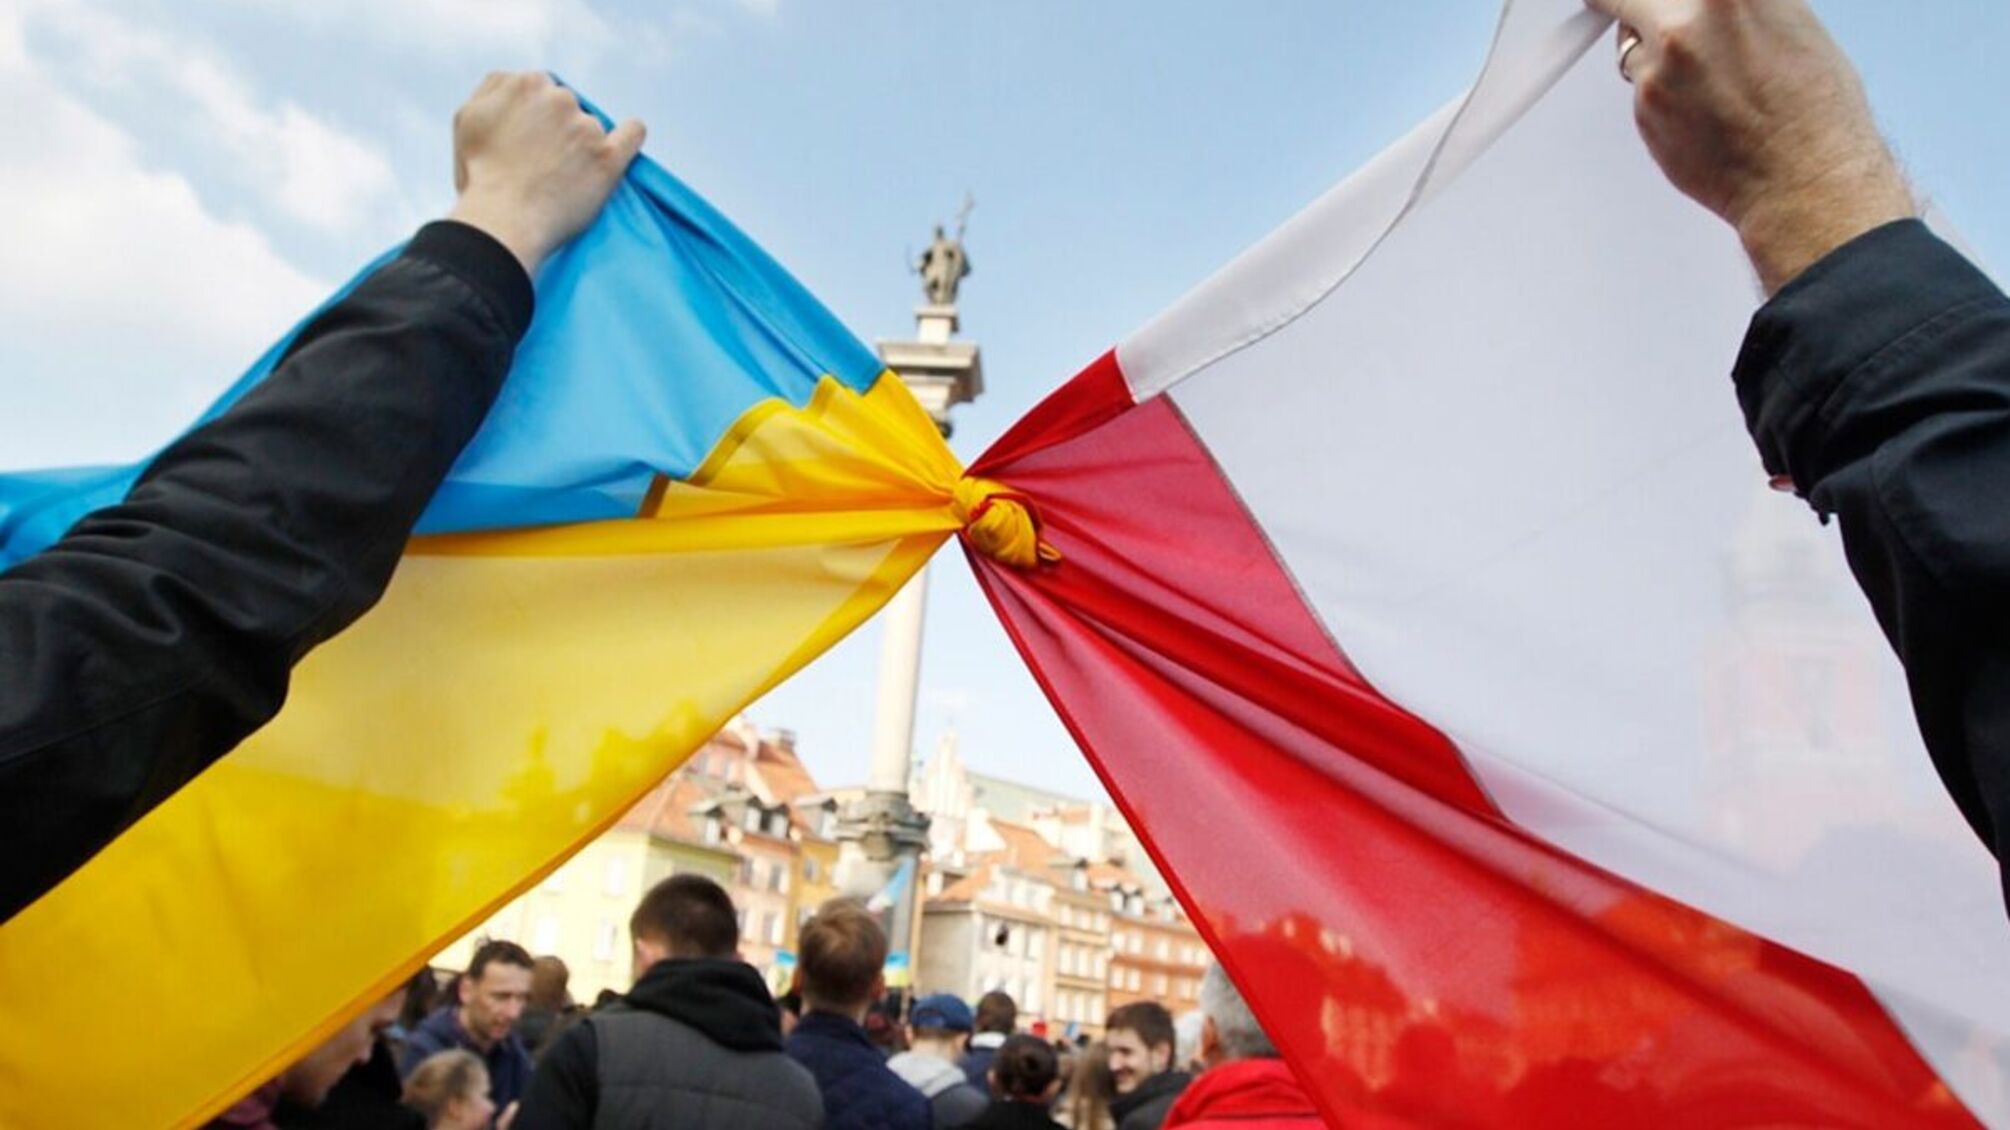 Польща святкує День незалежності і попереджає про можливі провокації щодо біженців з України 